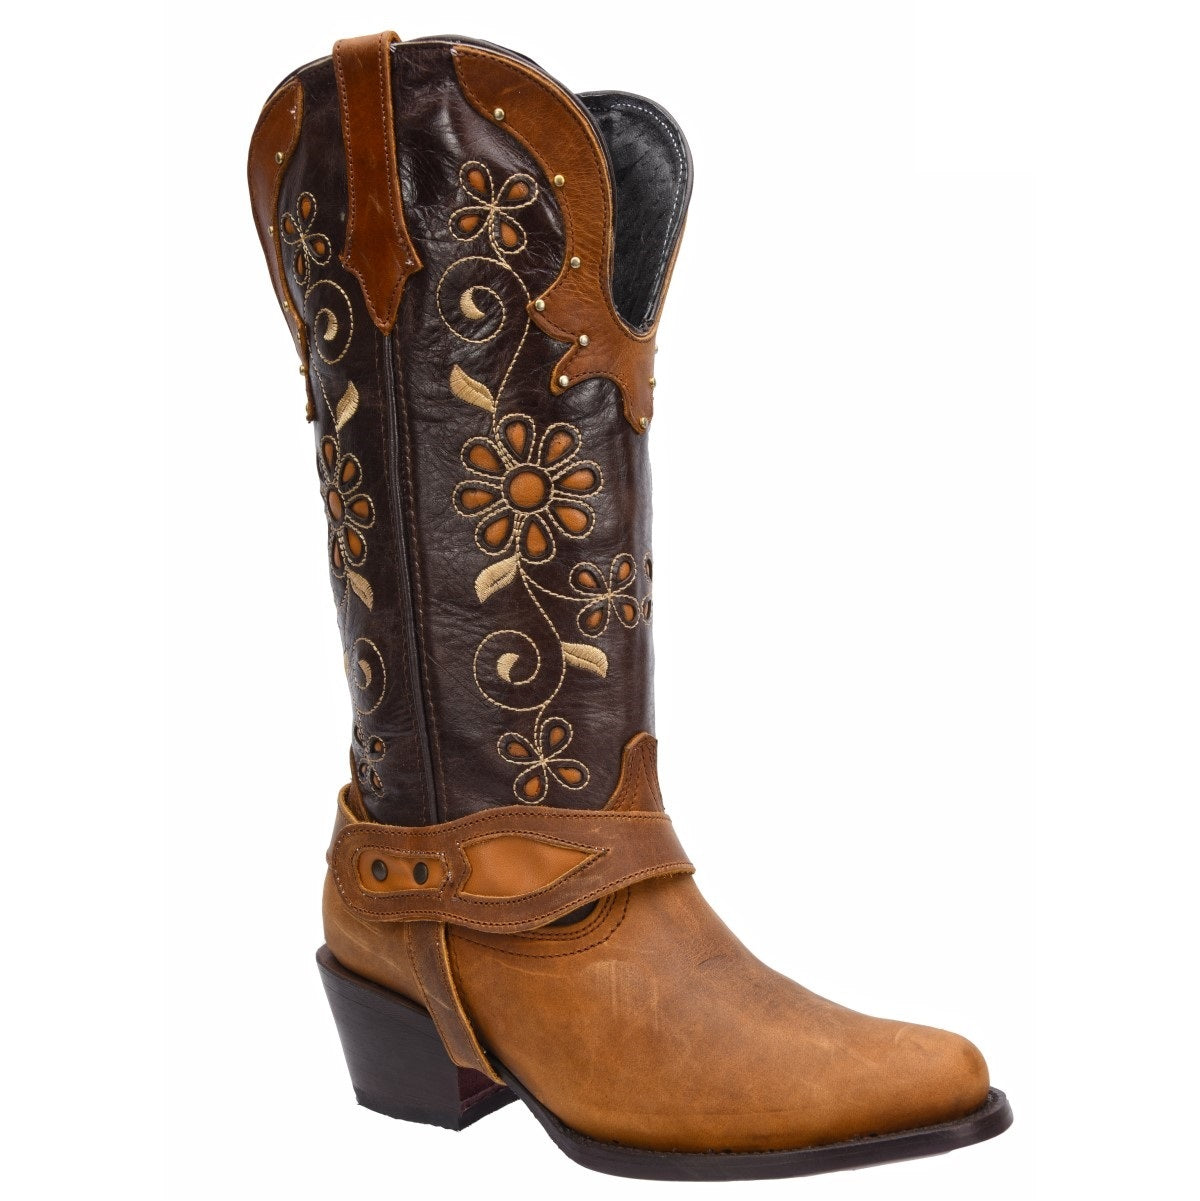 Botas Vaqueras TM-WD0571 - Western Boots